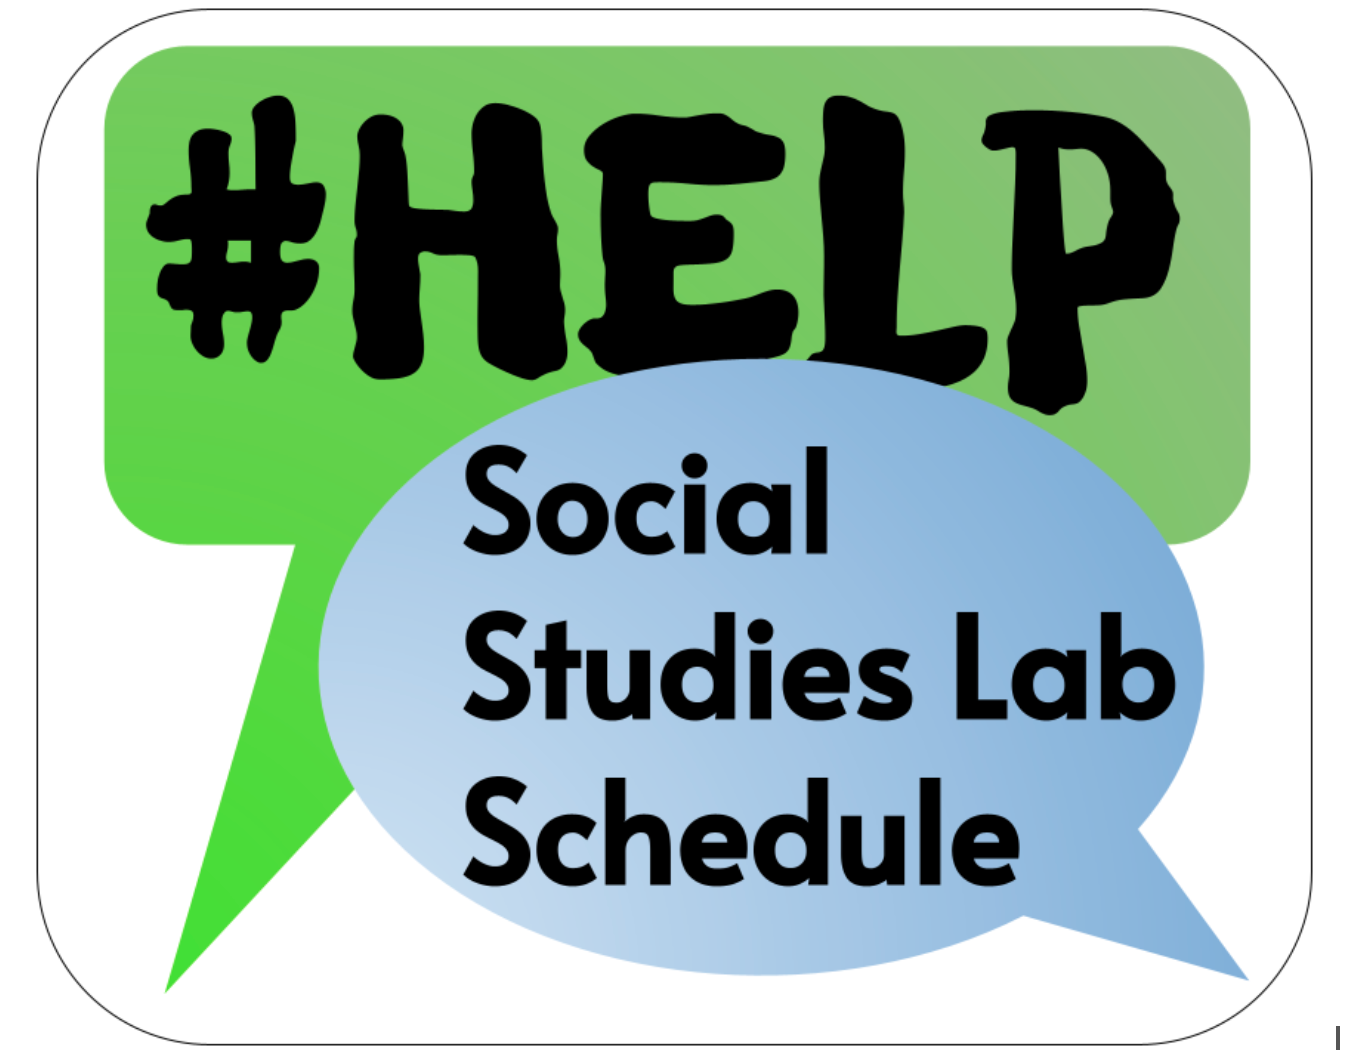 BUTTON Hashtag Help Social Studies Lab Schedule link